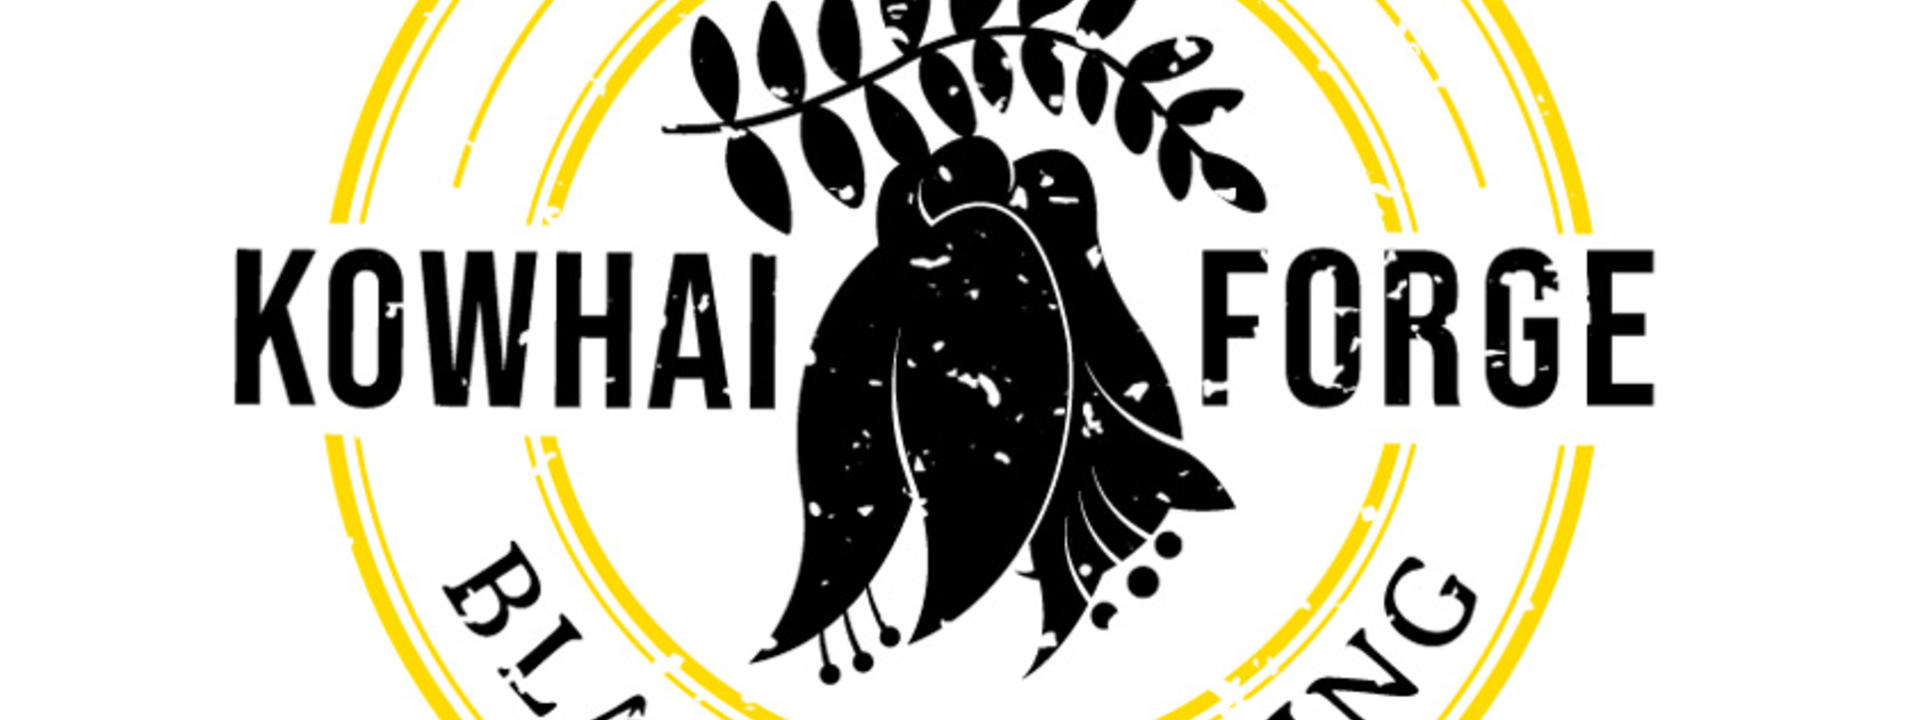 kowhai-forge-logo-web1.jpg